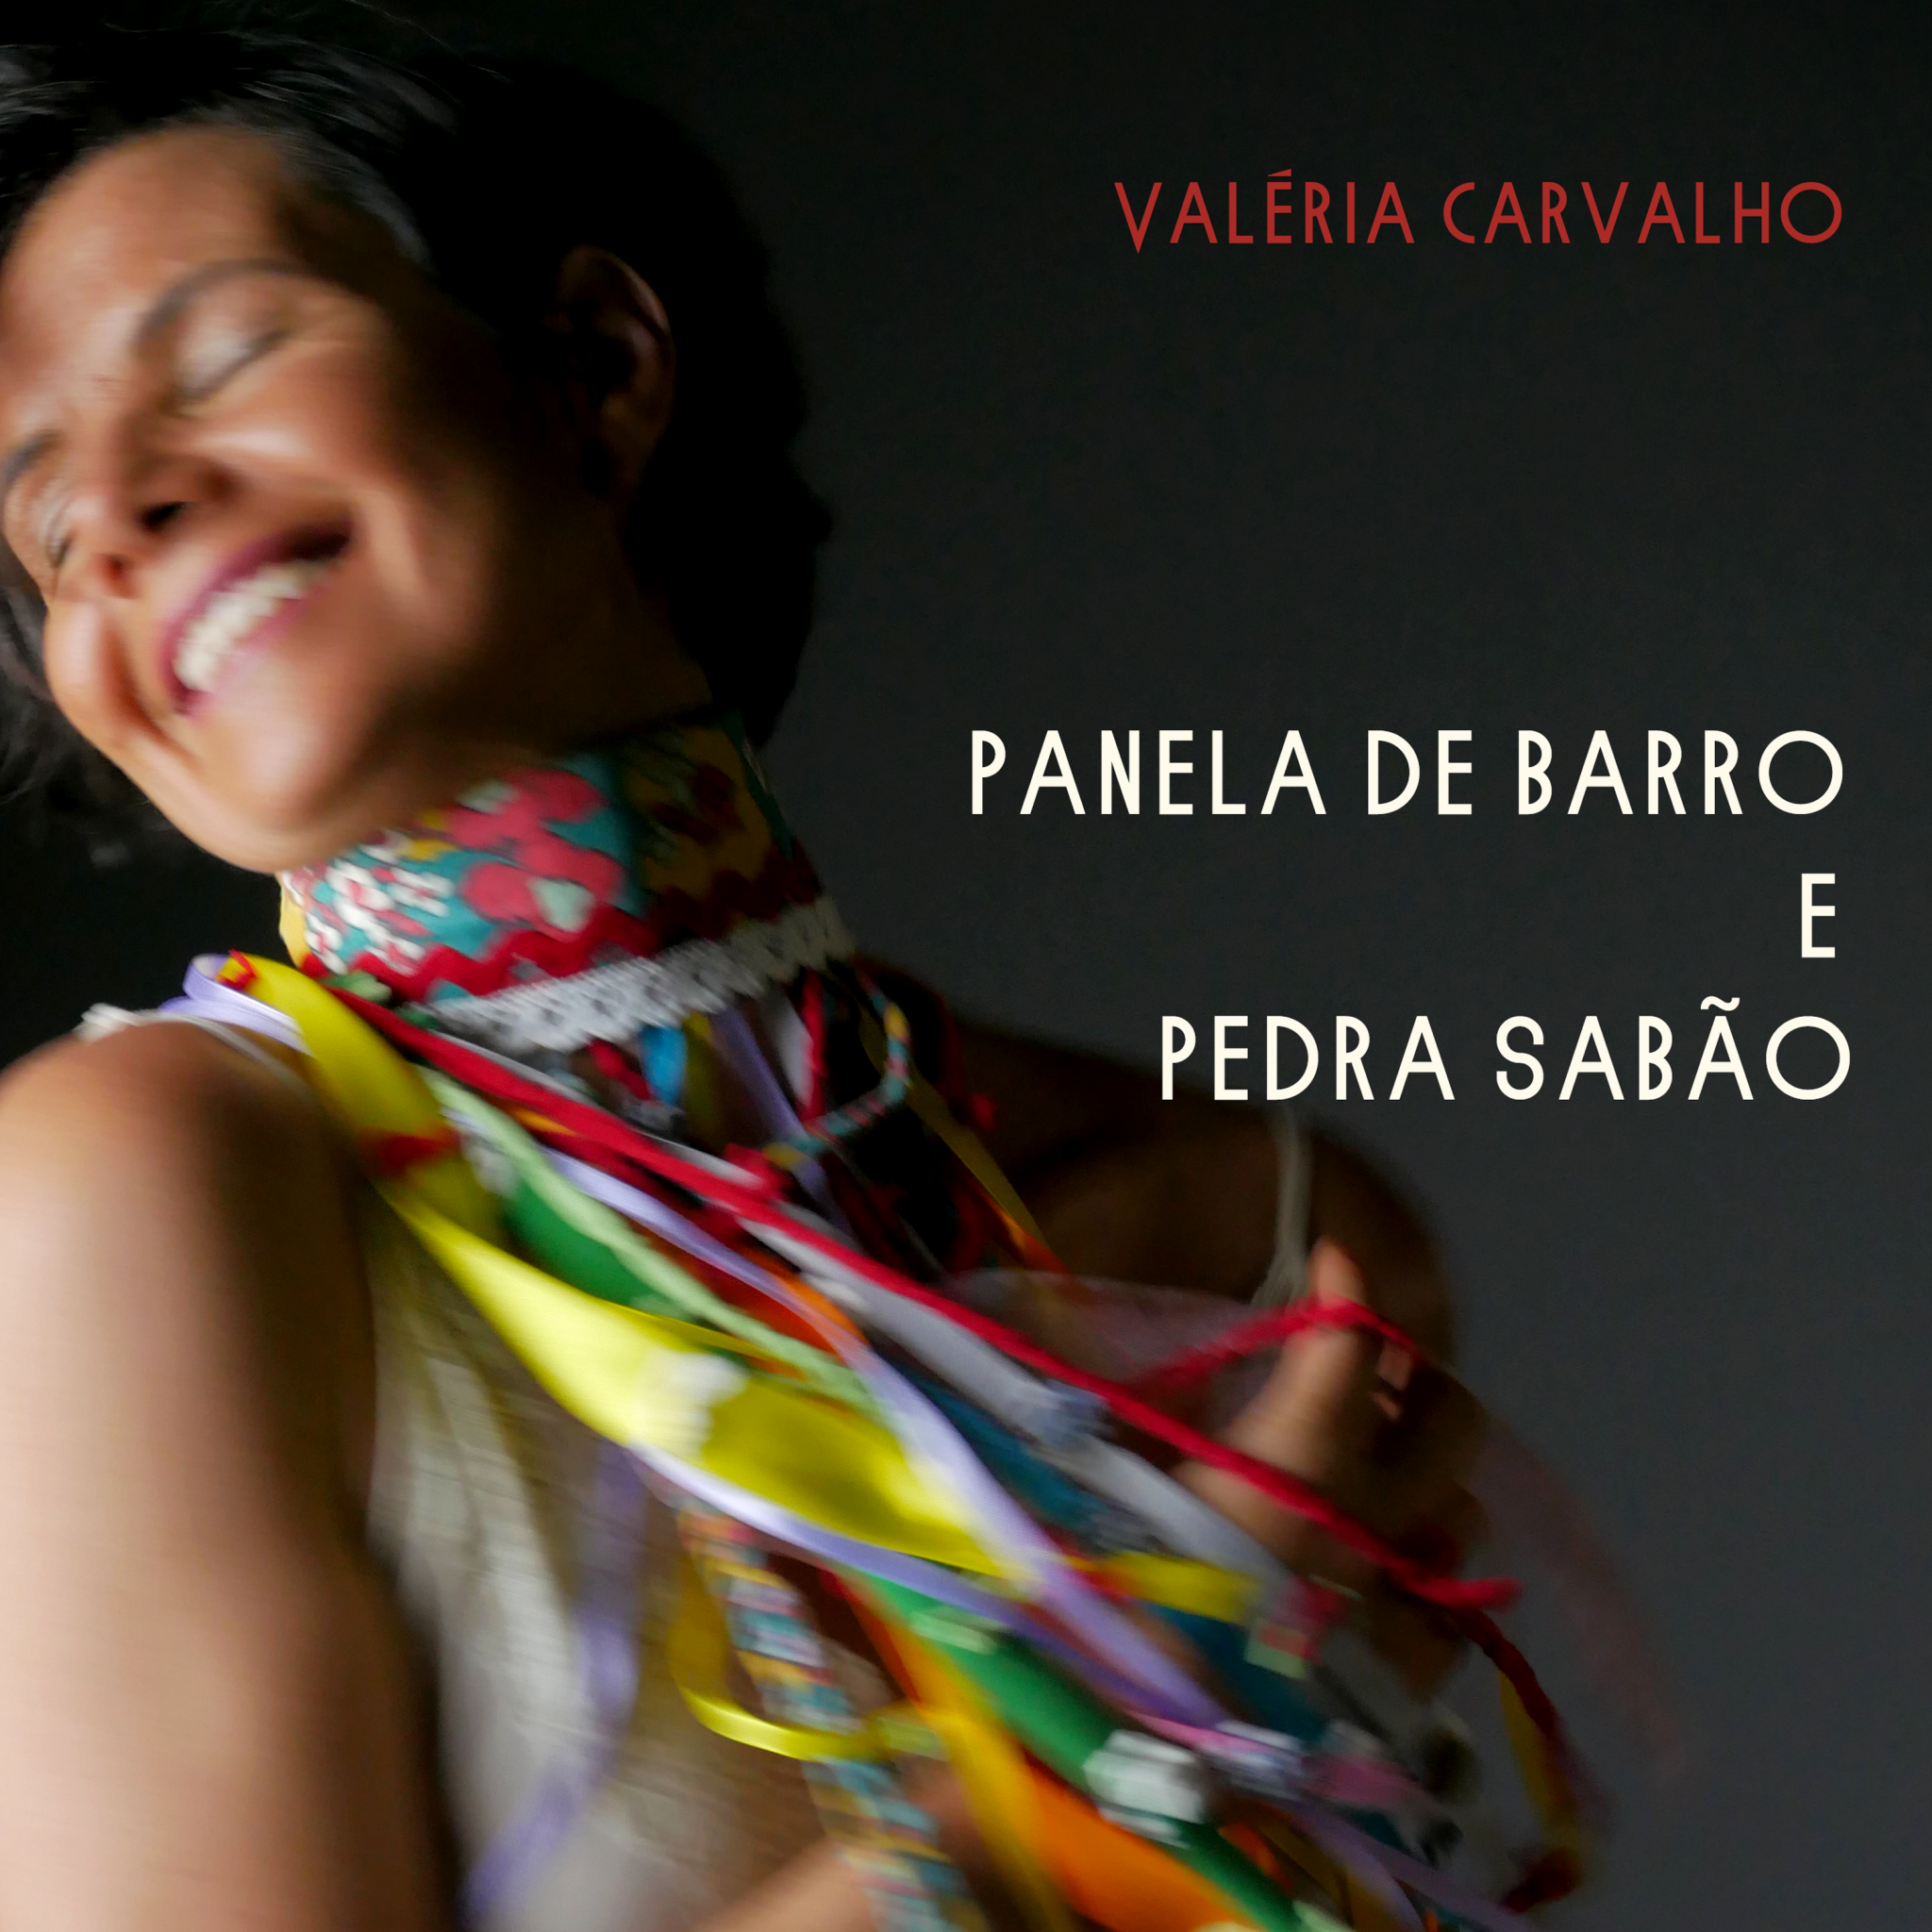 revistaprosaversoearte.com - Cantora e compositora mineira Valéria Carvalho lança álbum autoral 'Panela de Barro e Pedra Sabão'